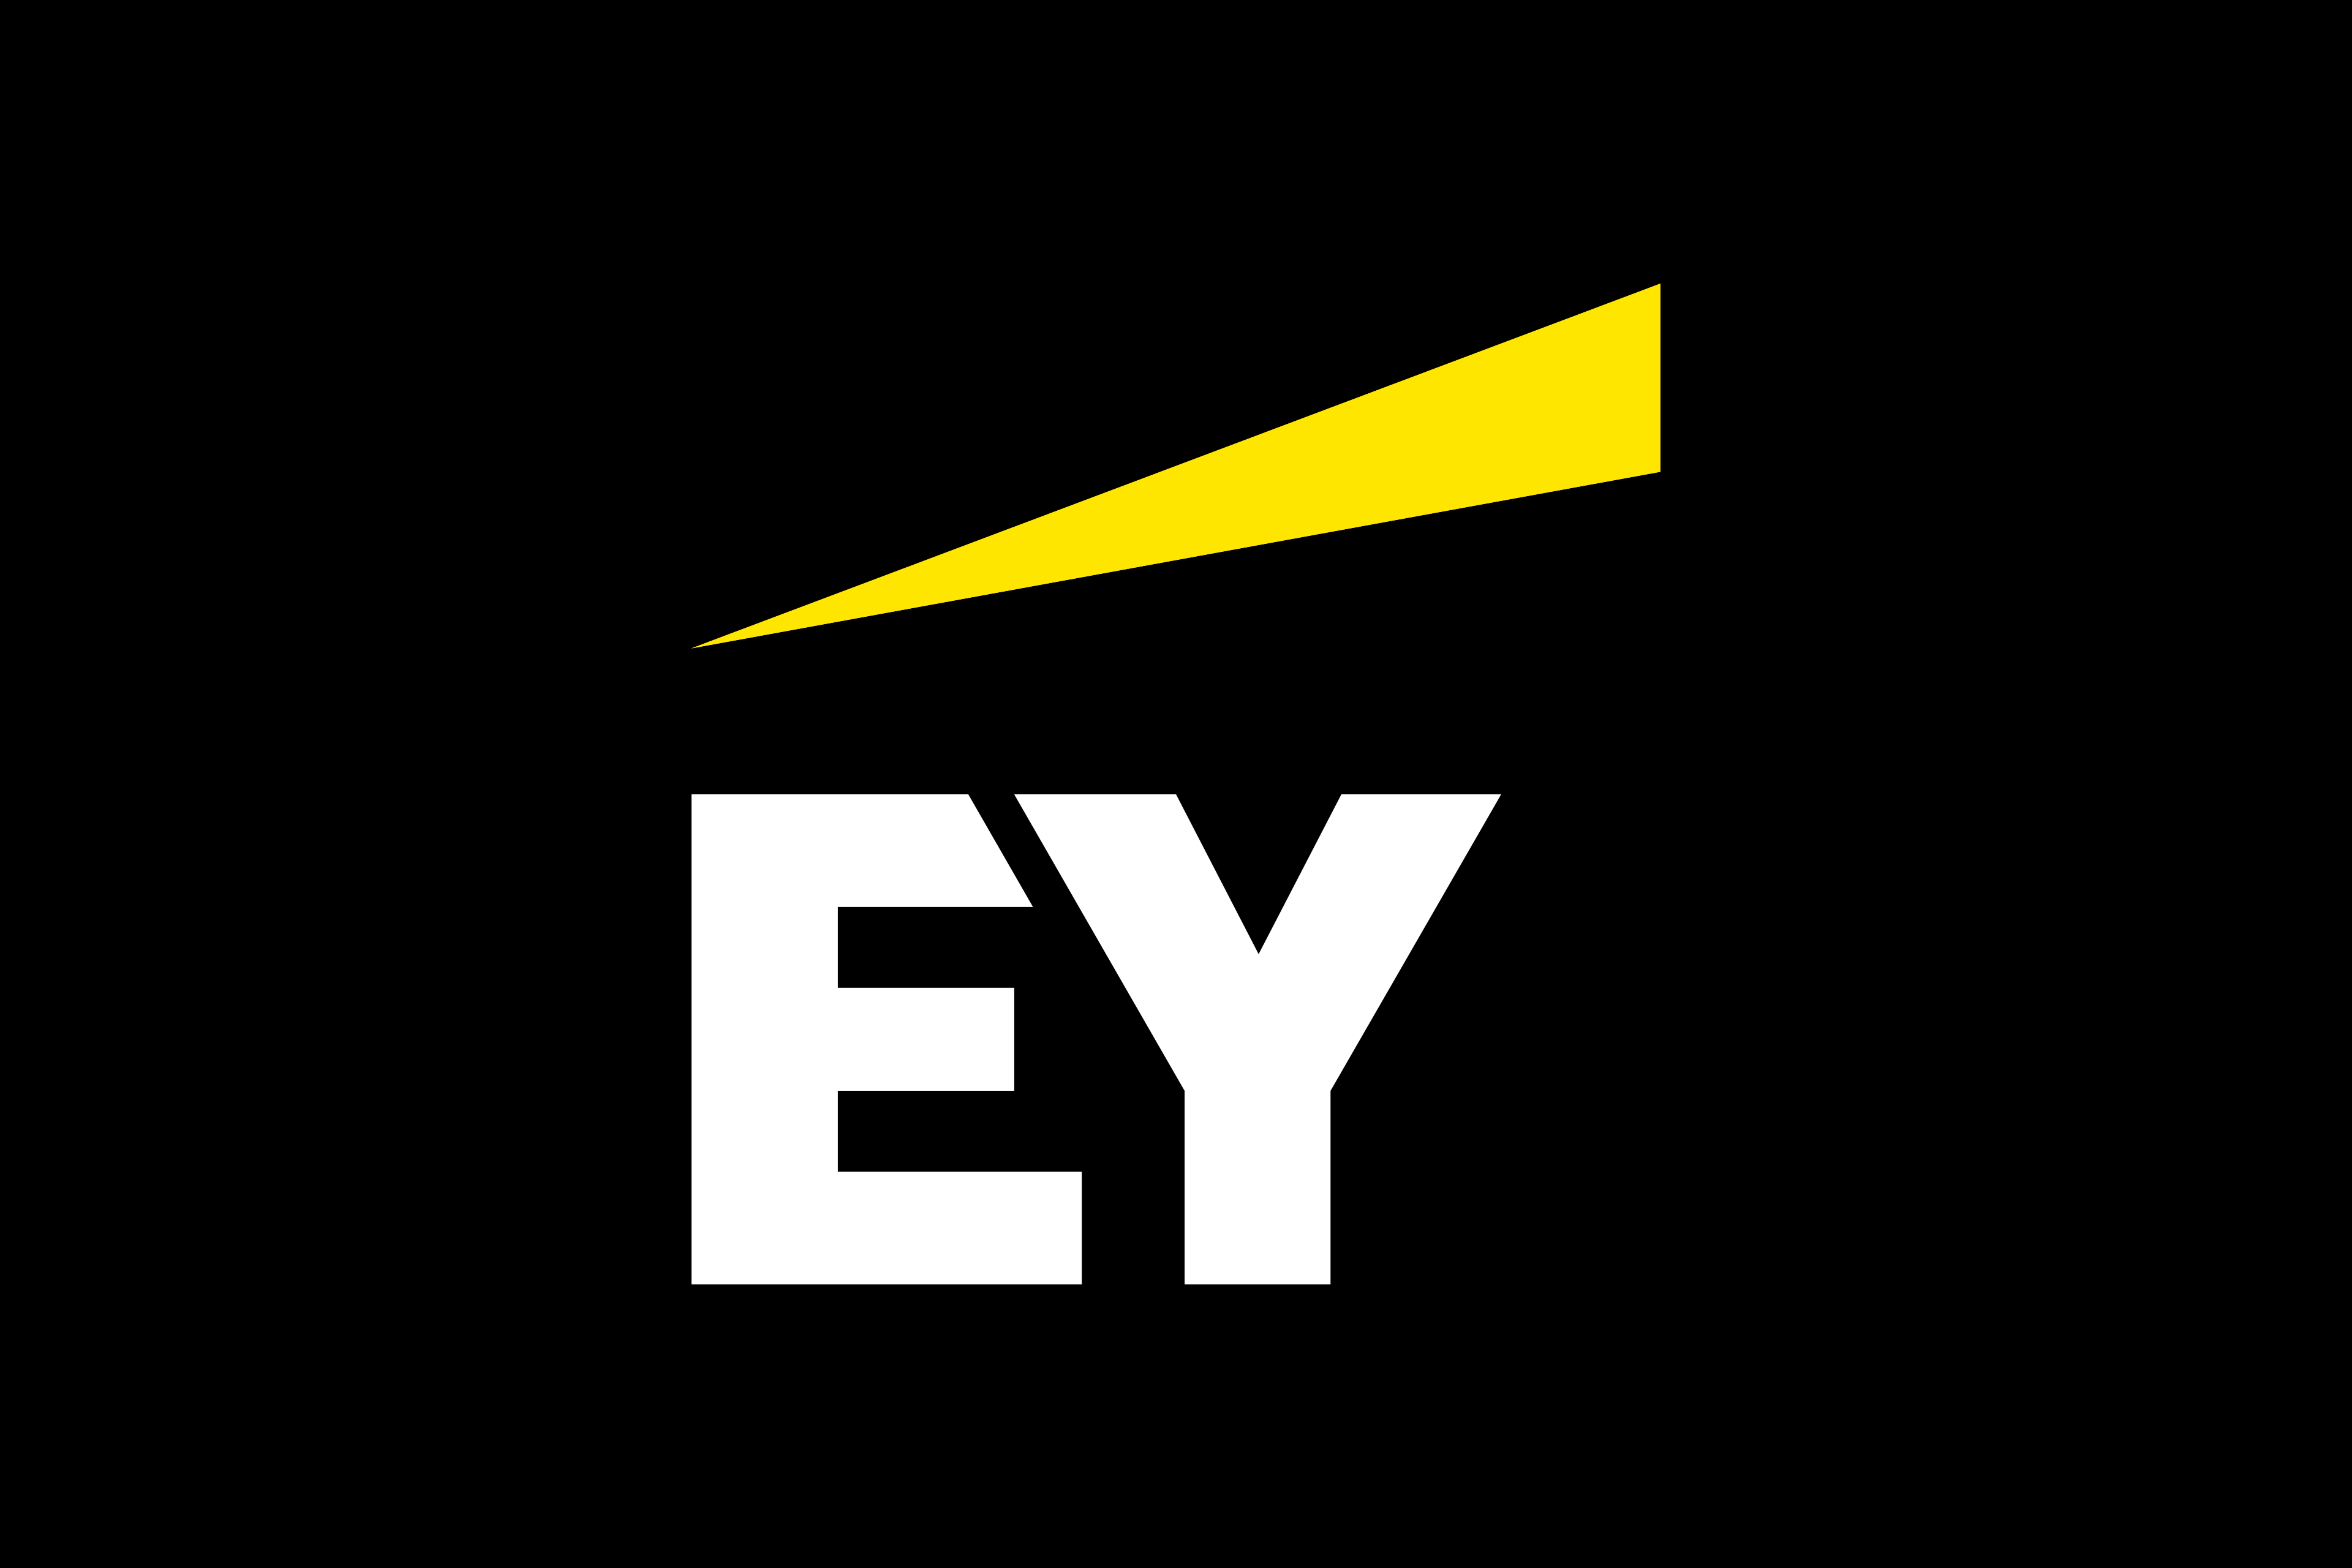 EY Announces Acquisition of Digital Detox